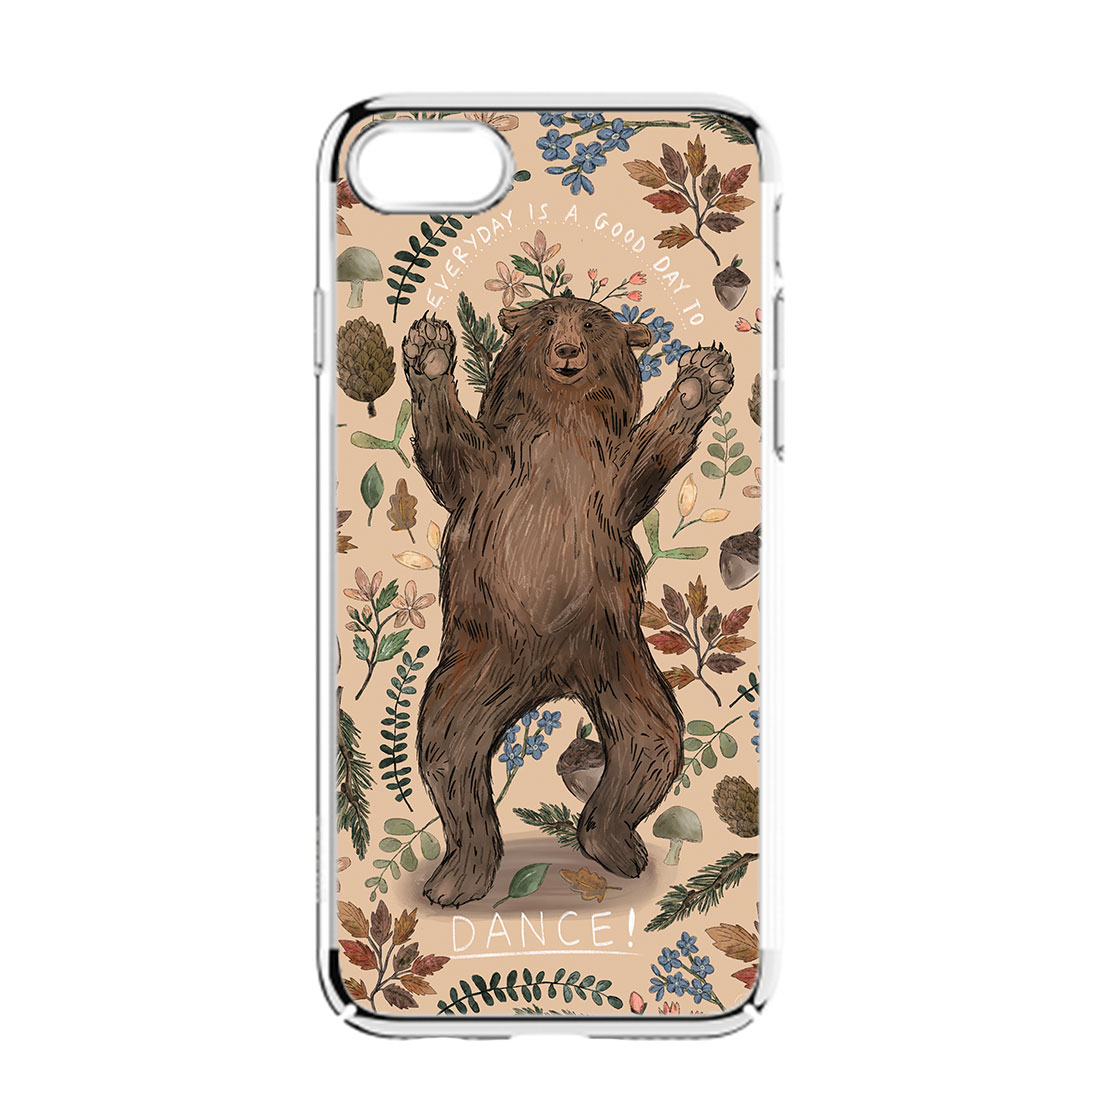 bear-dance-iphone-case